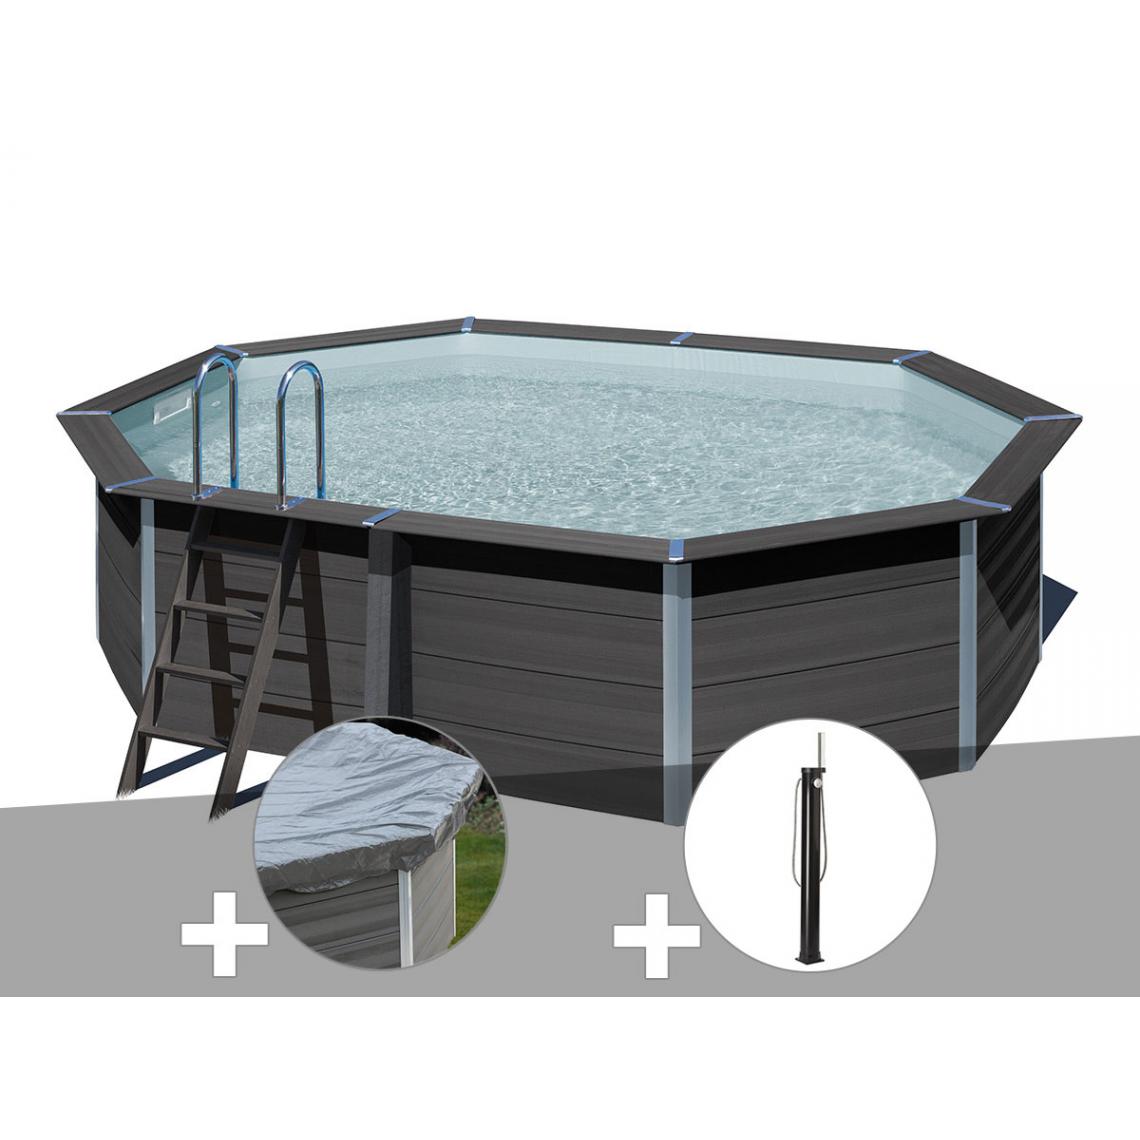 Gre - Kit piscine composite Gré Avant-Garde ovale 5,24 x 3,86 x 1,24 m + Bâche hiver + Douche - Piscines bois